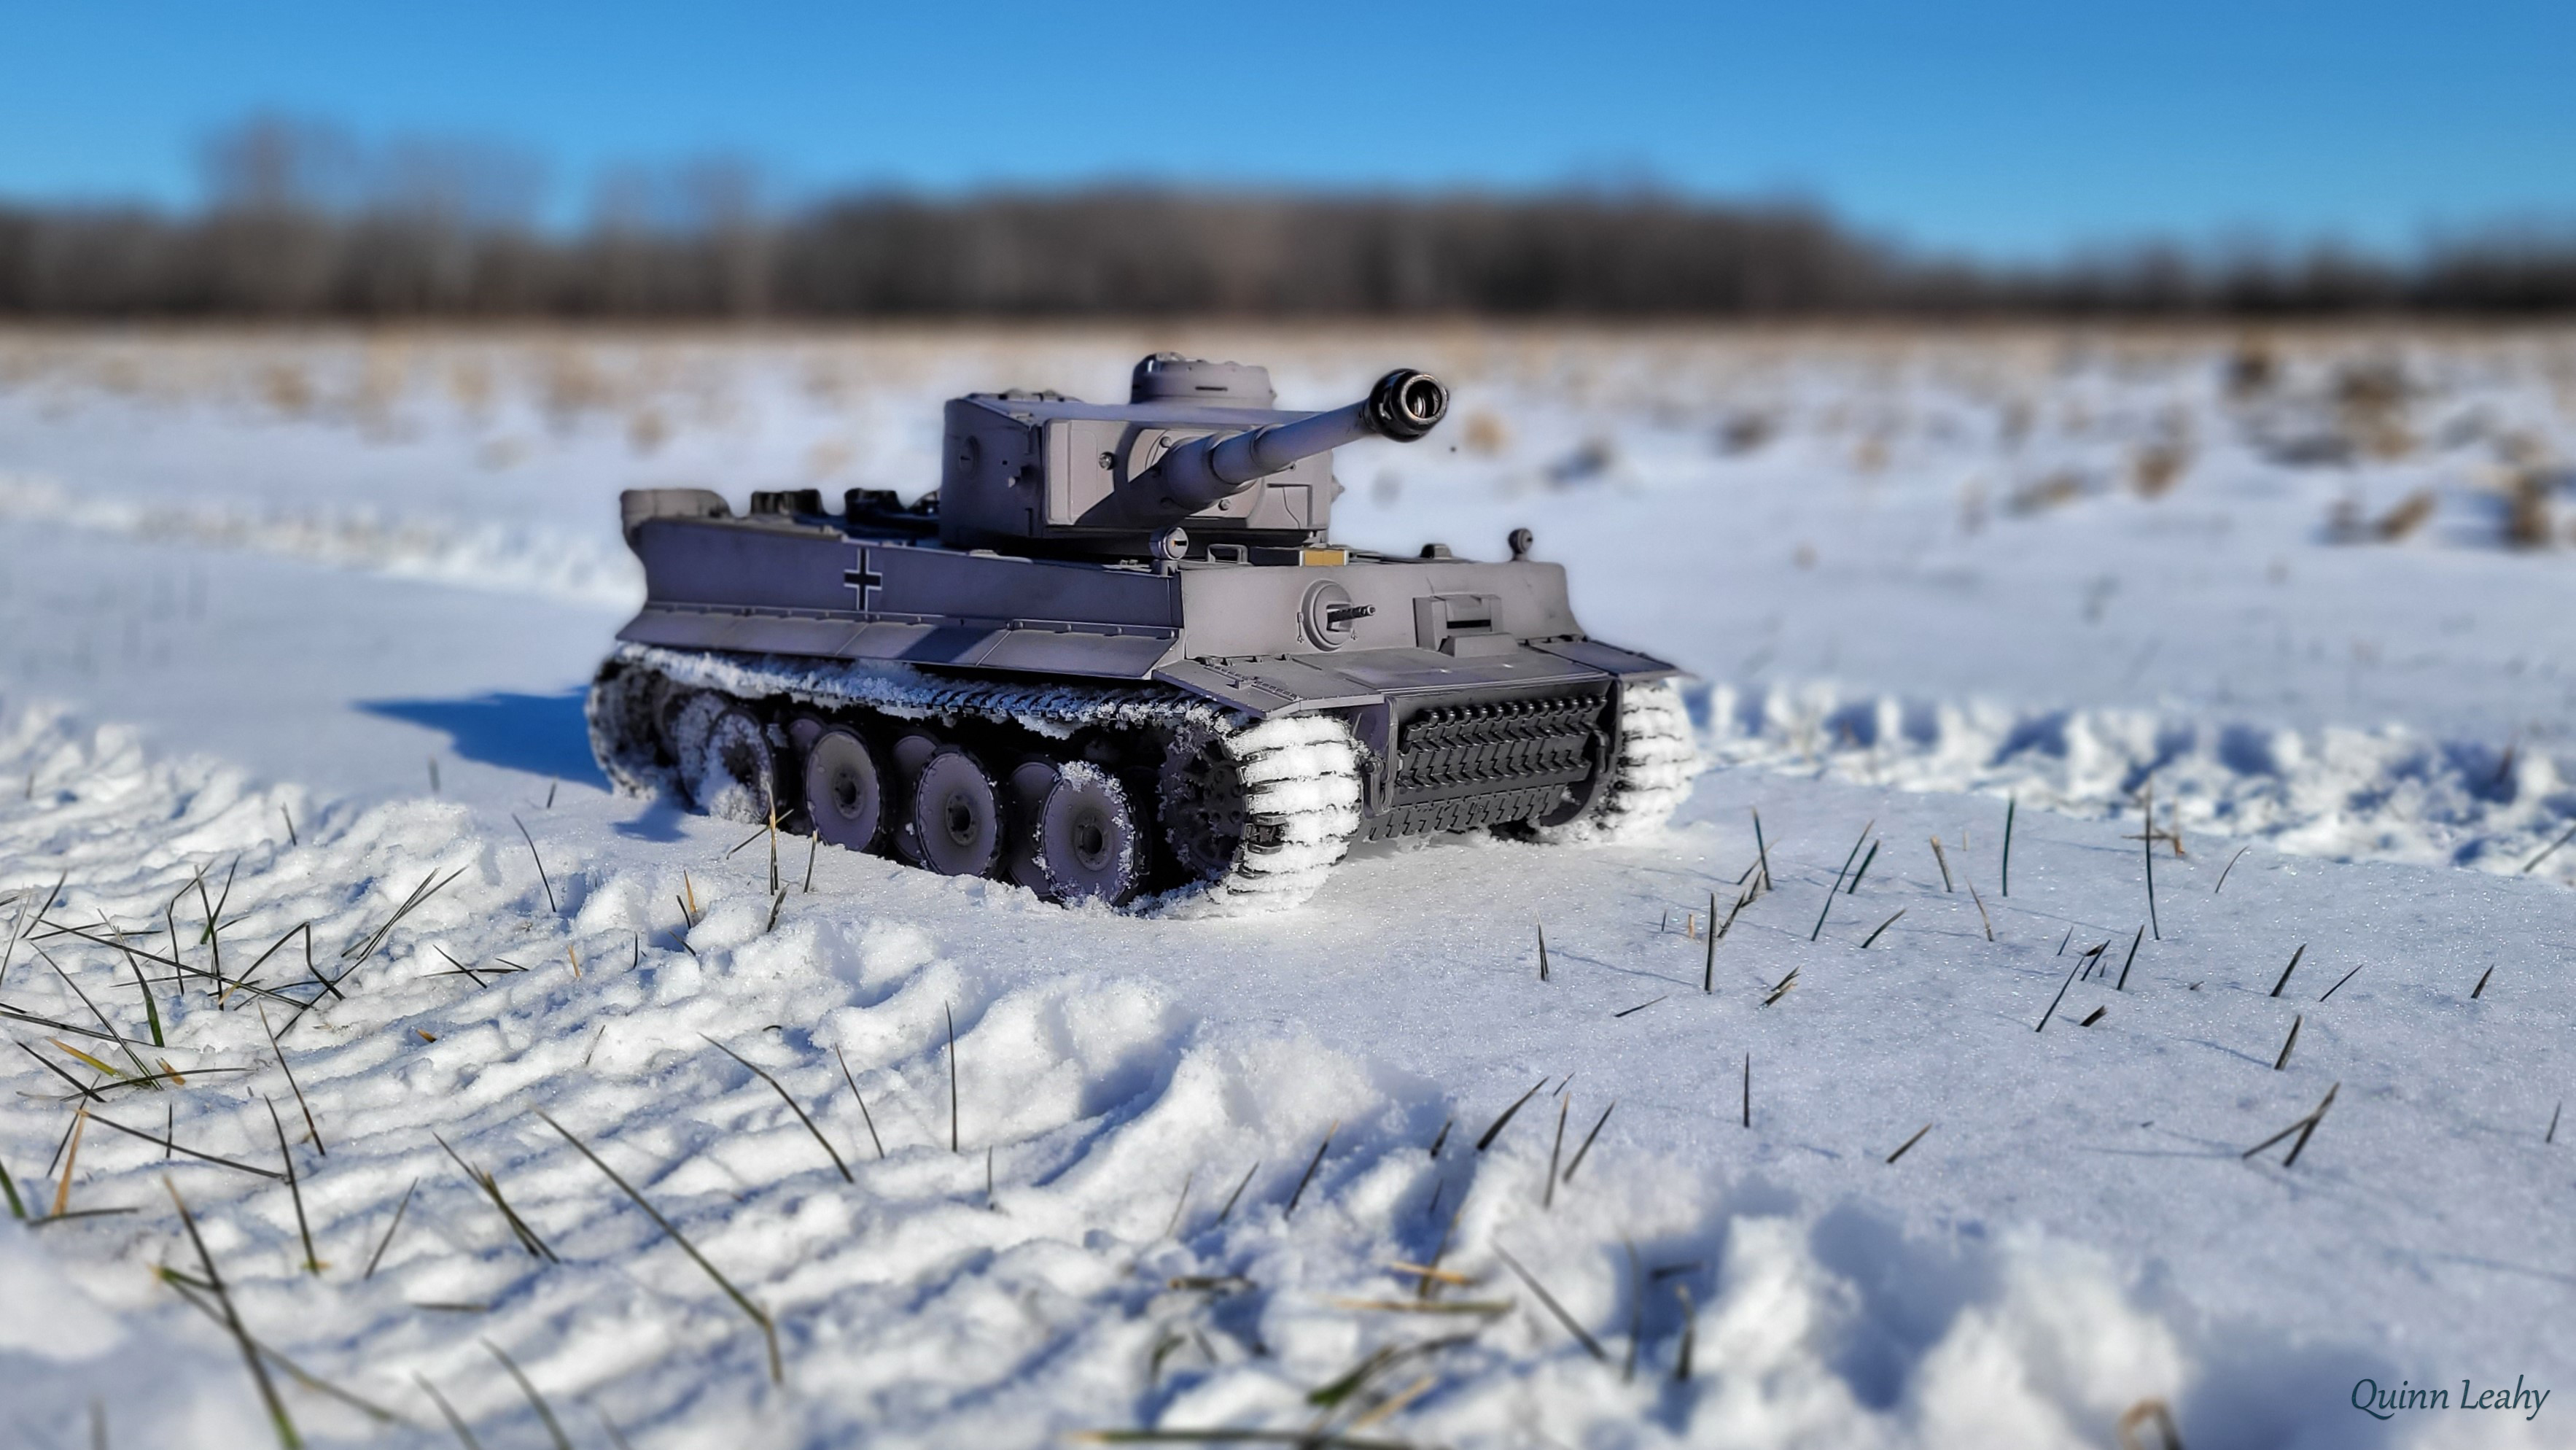 A Snowy Tiger by Sentry_gunner